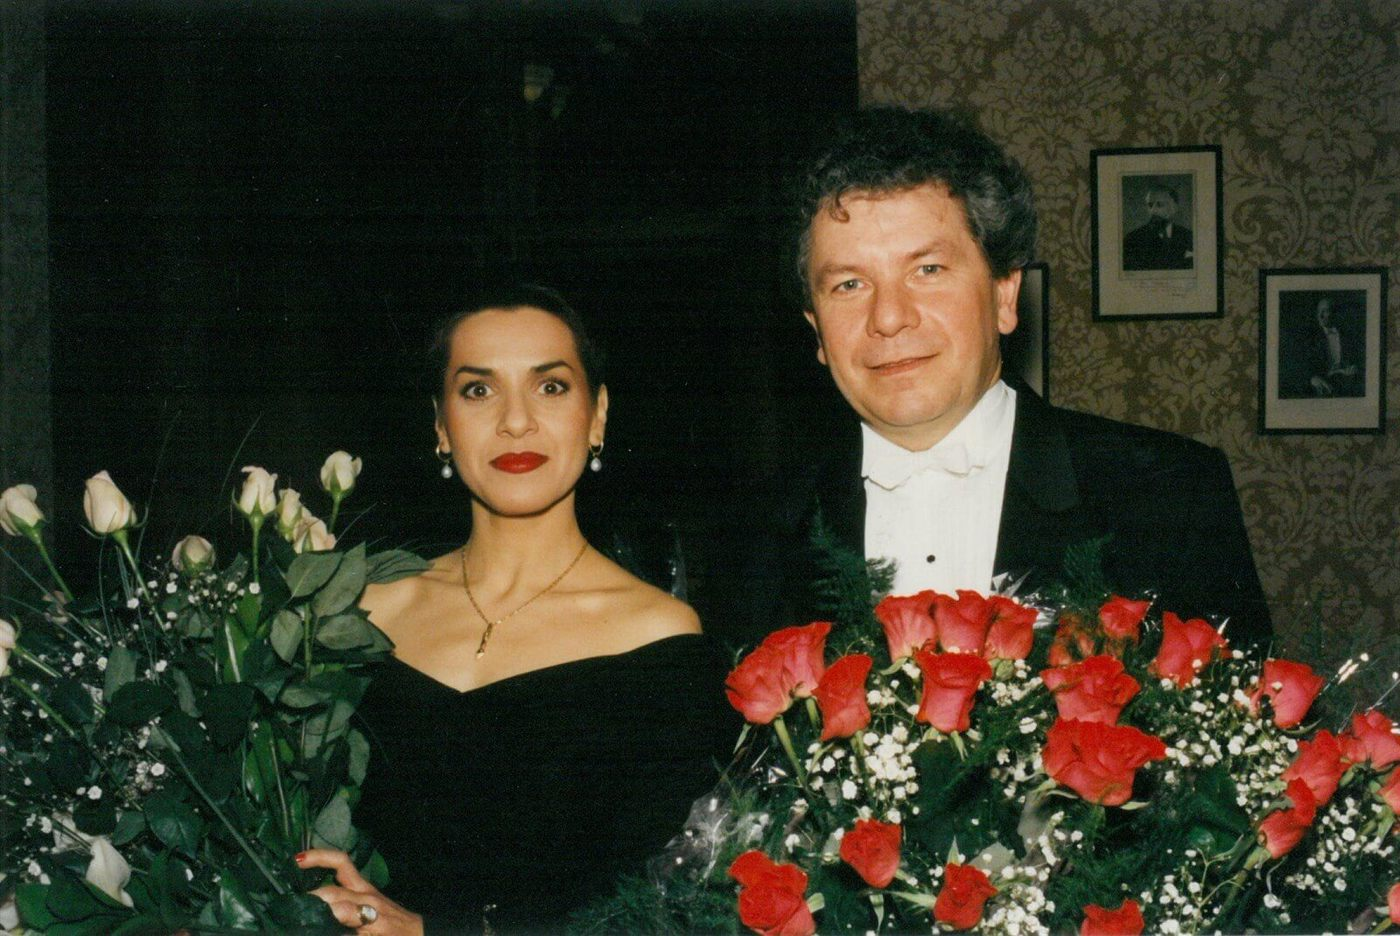 Dagmar Pecková and Jiří Bělohlávek after the concert celebrating the centenary of the Czech Philharmonic in 1996